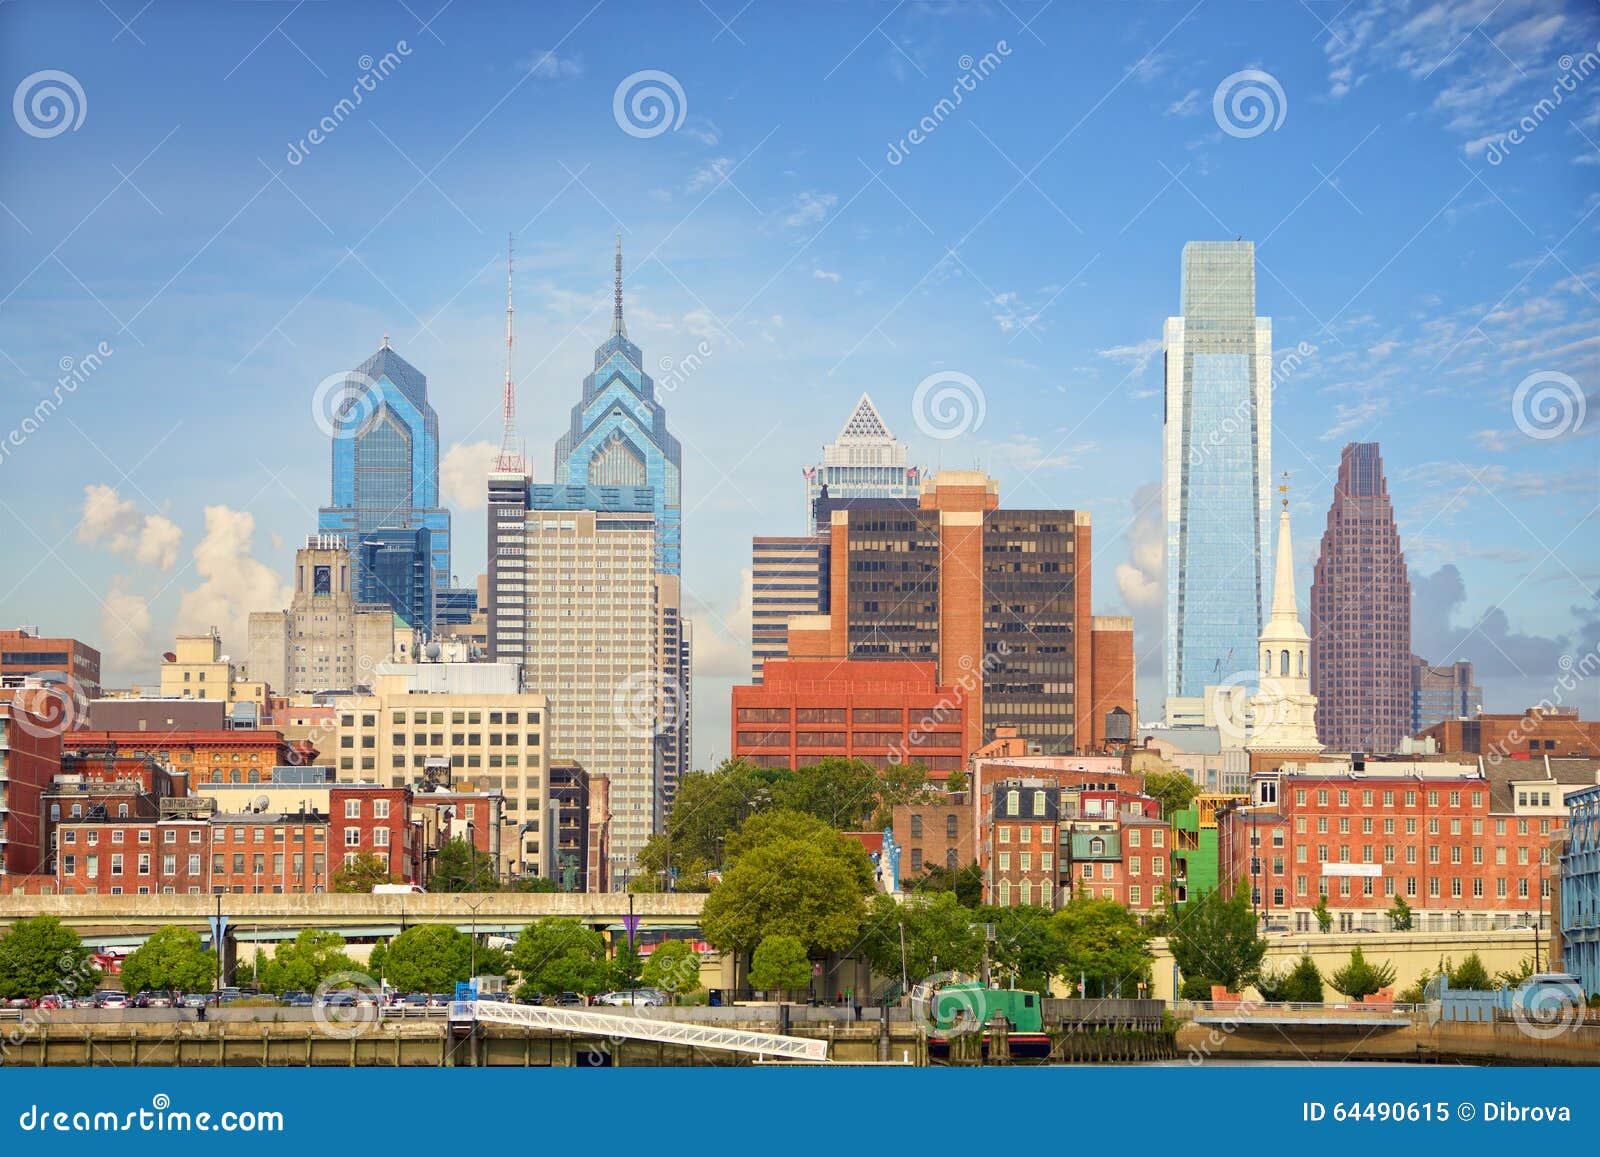 philadelphia cityscape